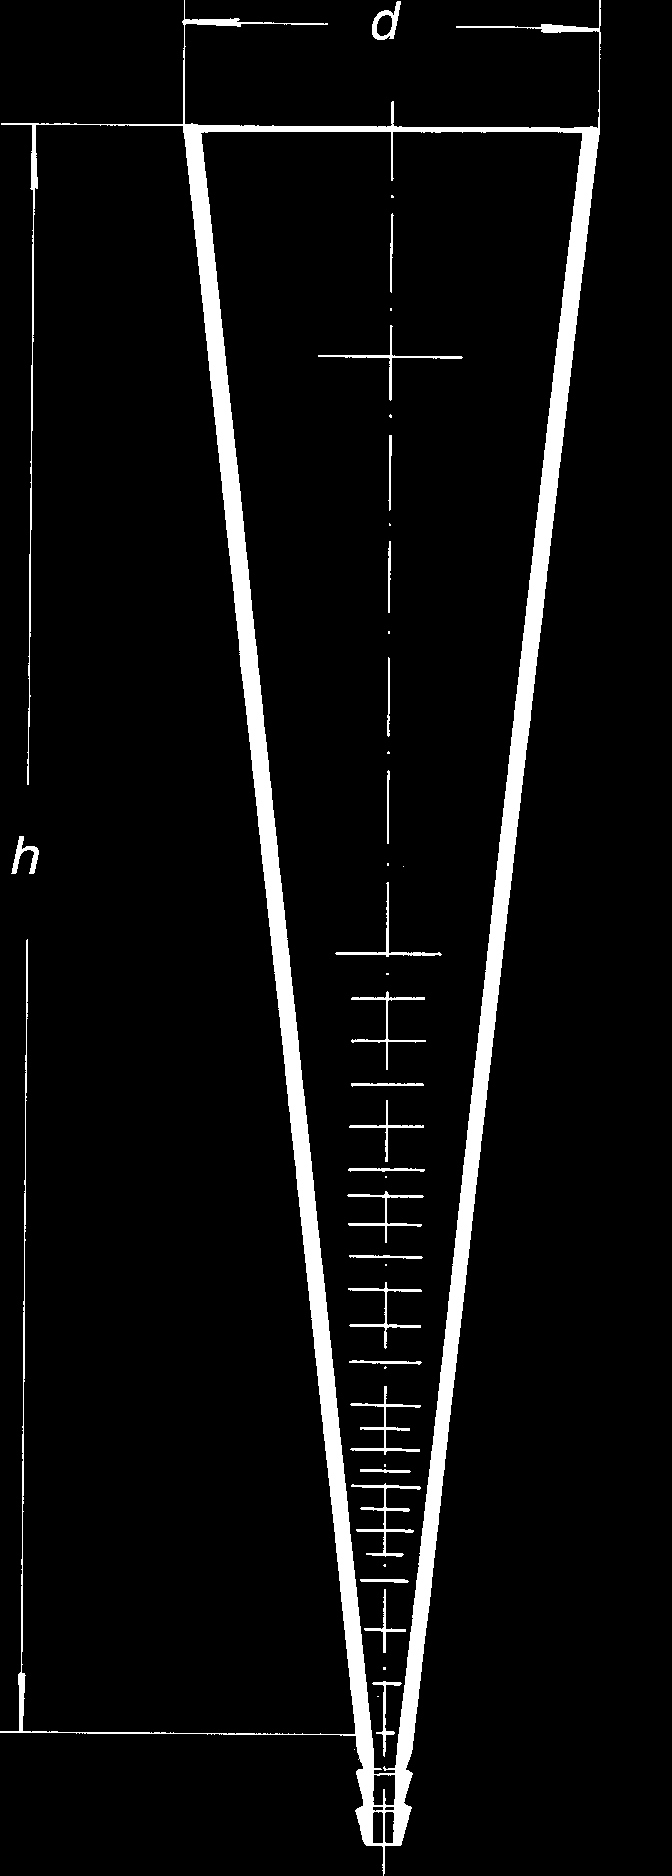 číslo Objem (ml) Delenie Balenie (ks) 00 : Valec sedimentačný podľa Imhoffa kat. č. s uzavretou špičkou Obj.